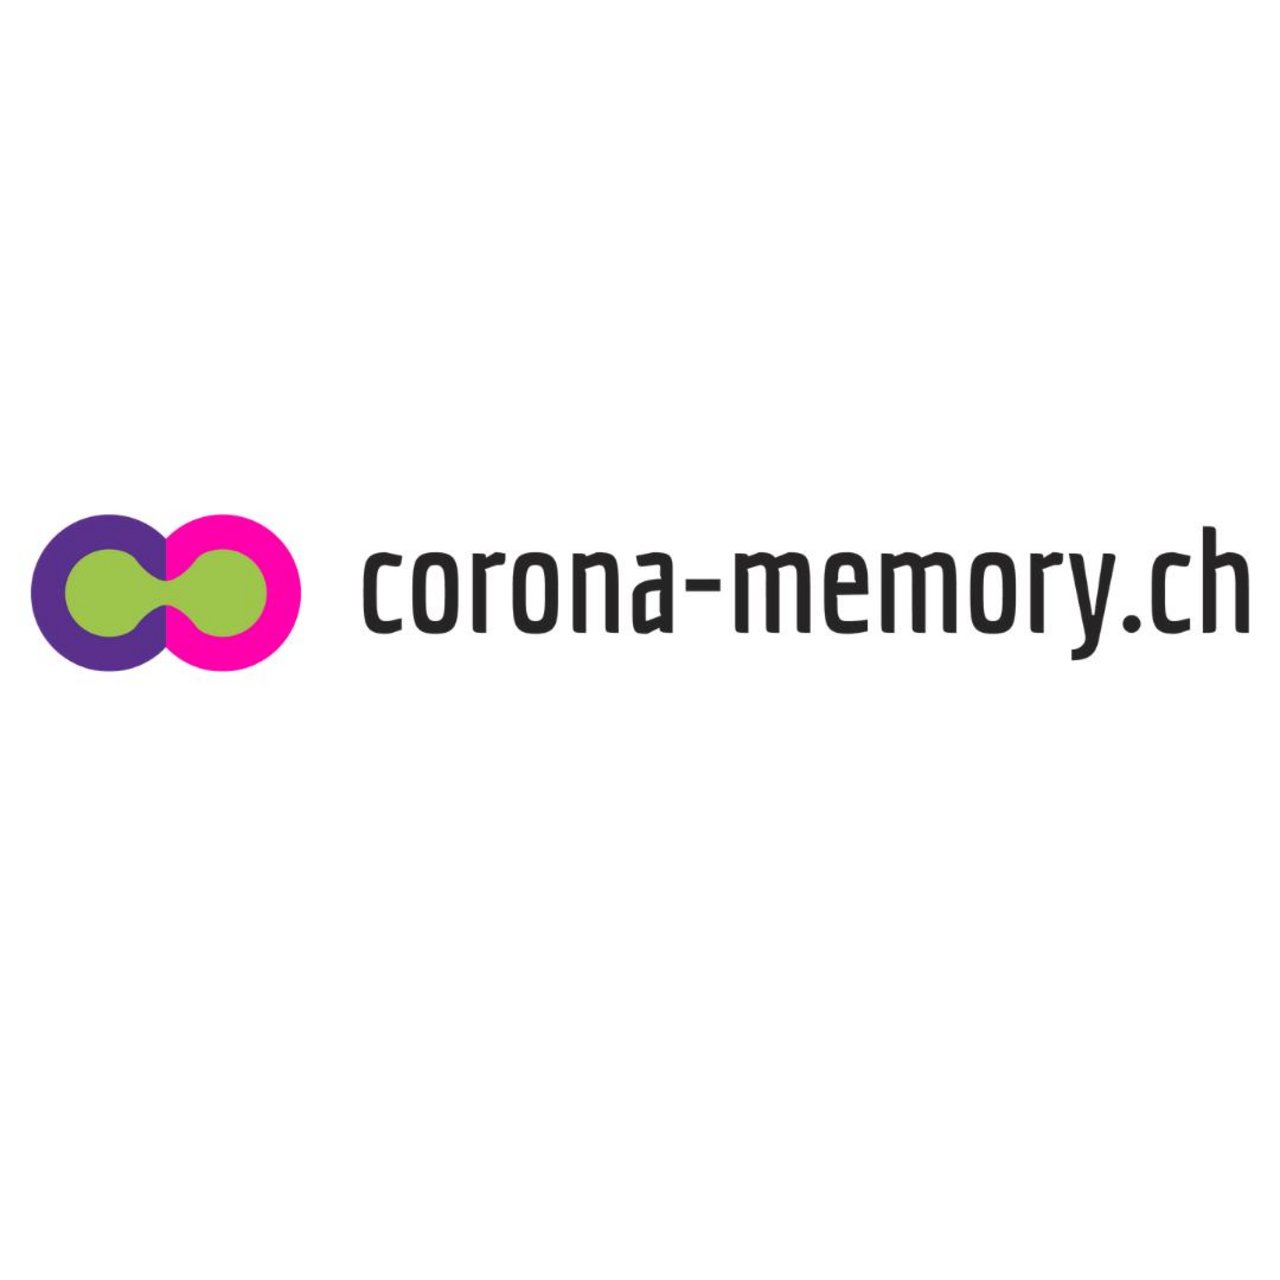 Auf www.corona-memory.ch werden persönliche Erinnerungen an den Ausnamhezustand gesammelt. (Bild corona-memory.ch)